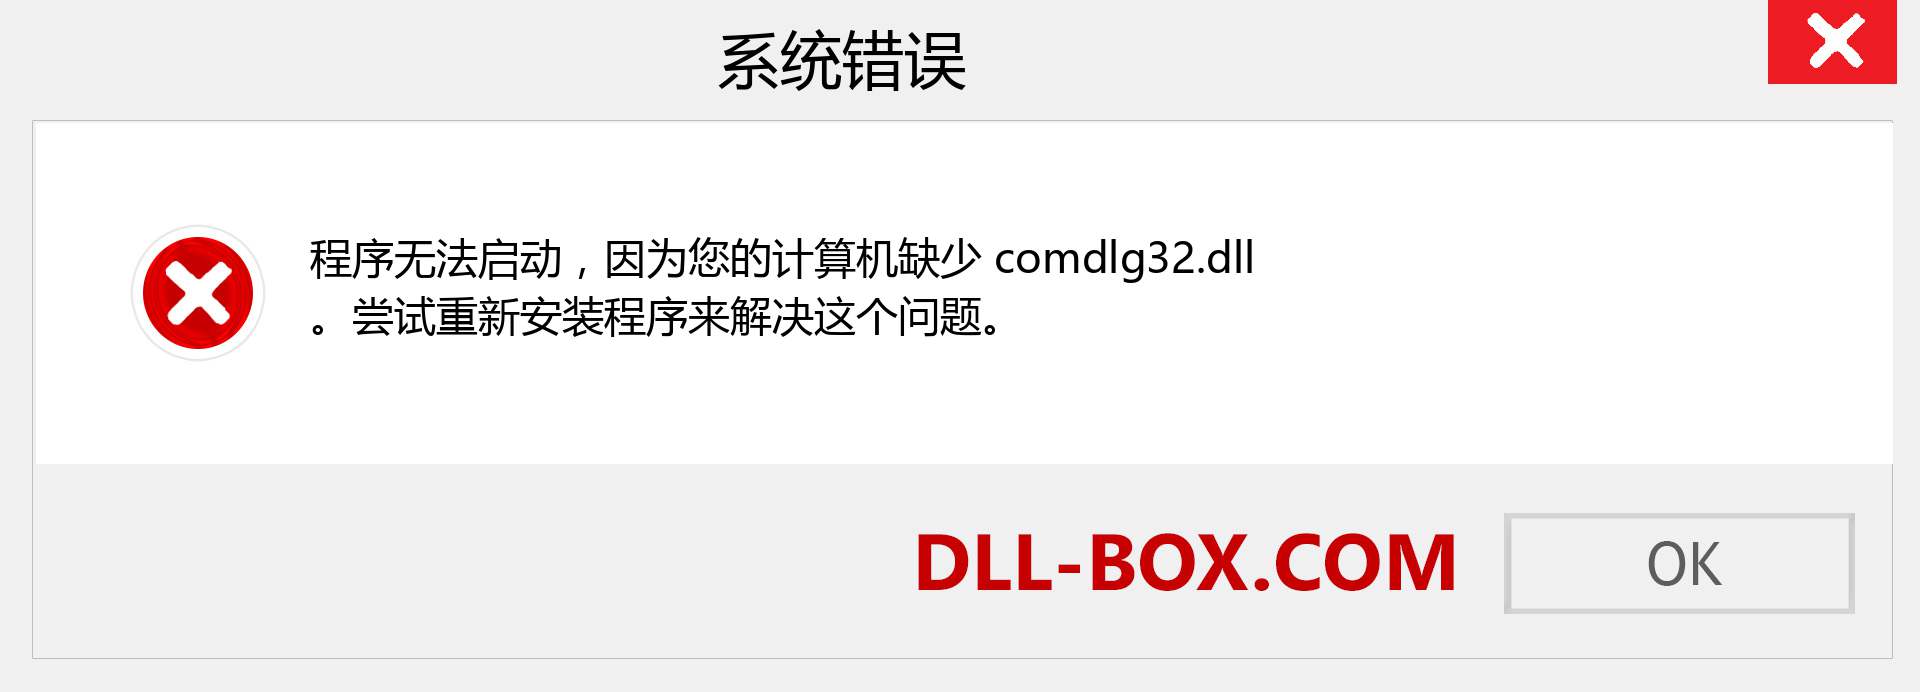 comdlg32.dll 文件丢失？。 适用于 Windows 7、8、10 的下载 - 修复 Windows、照片、图像上的 comdlg32 dll 丢失错误